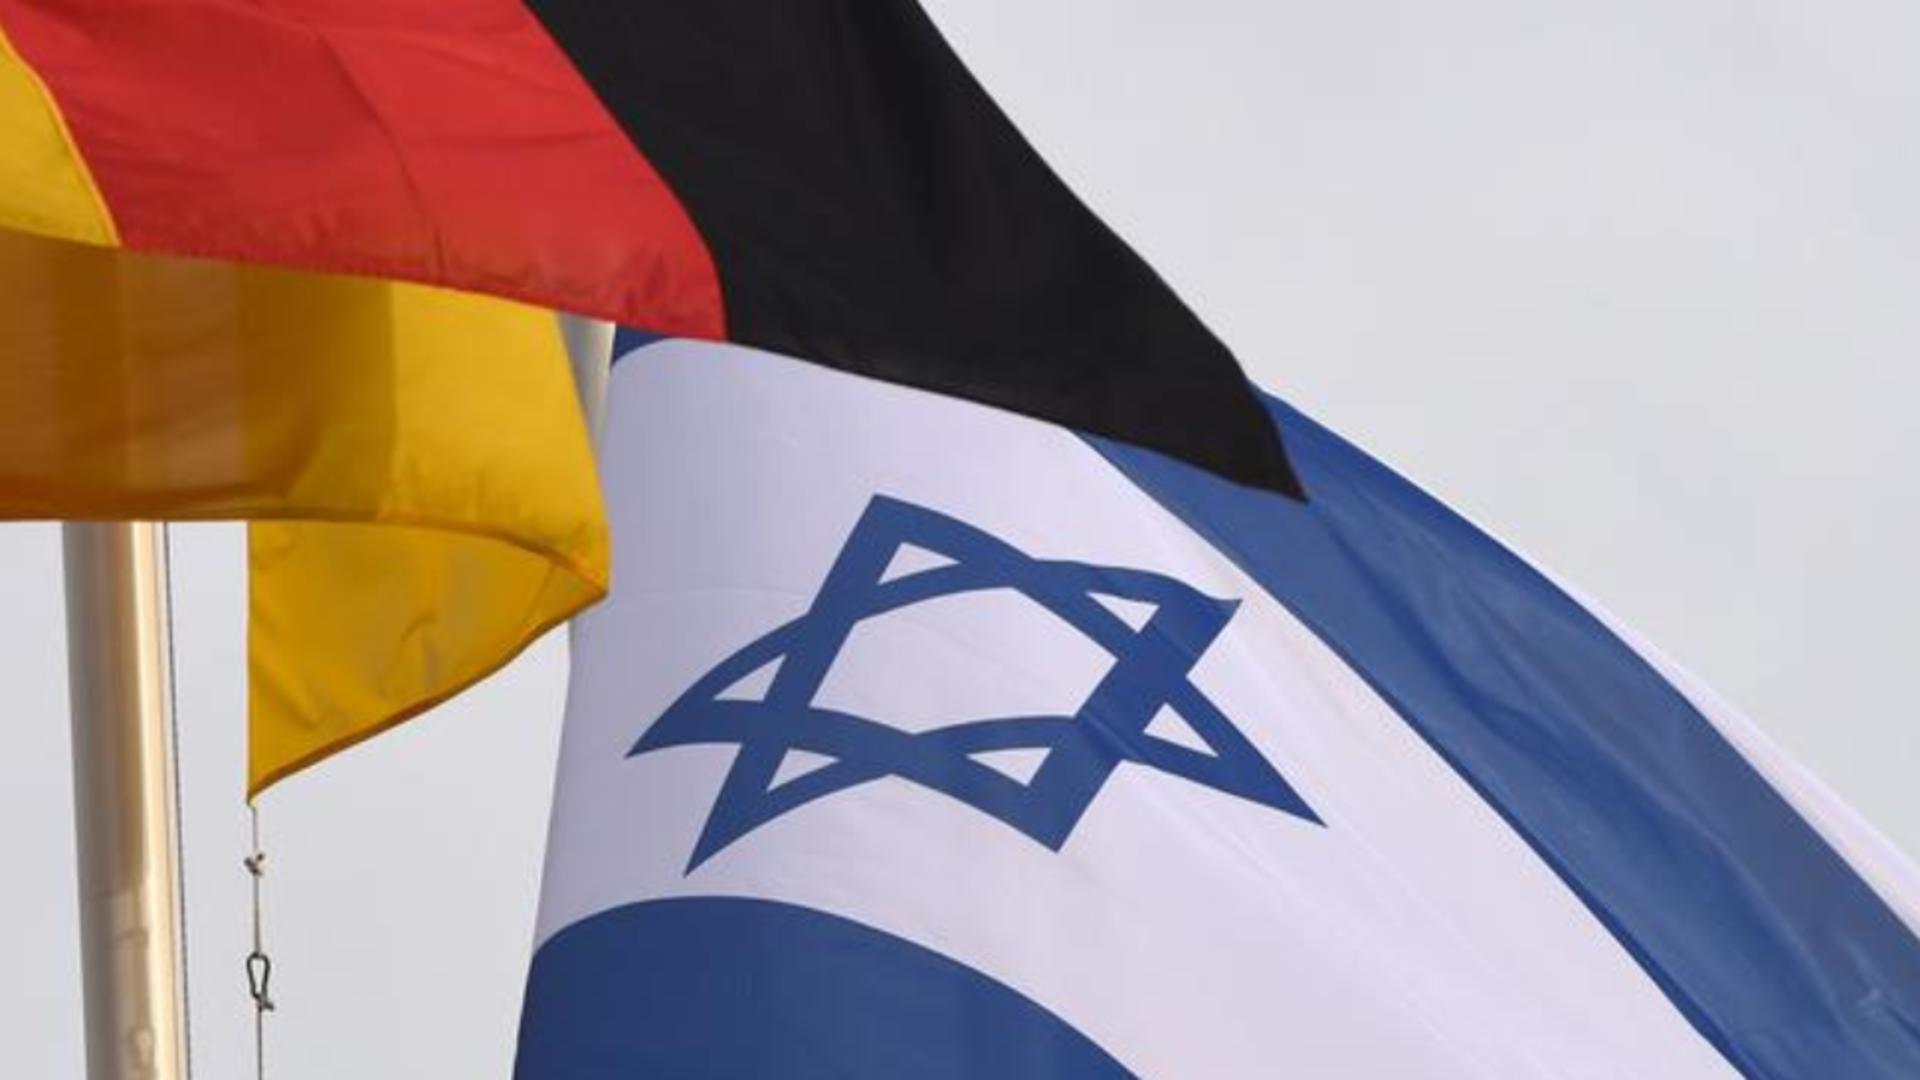 Decizie controversată în Germania pentru naturalizare – Solicitare legată de Israel la acordarea cetățeniei, după atacul Hamas din 7 octombrie